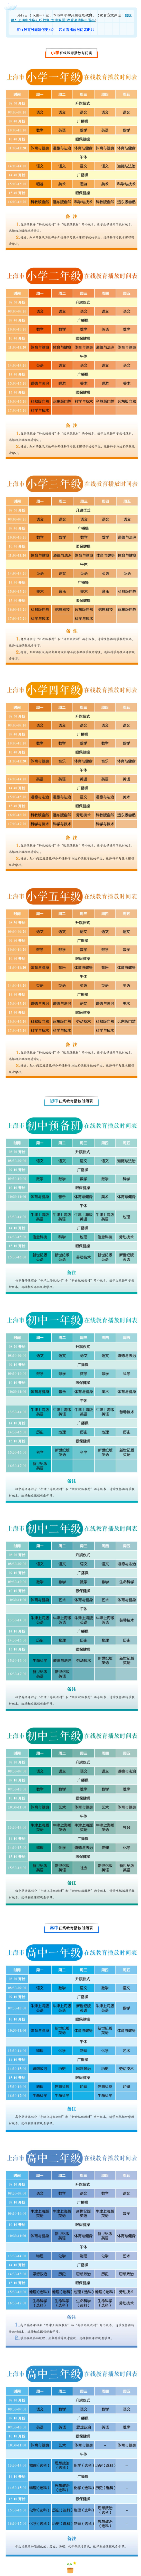 上海市中小学各年级在线教育时间表.png